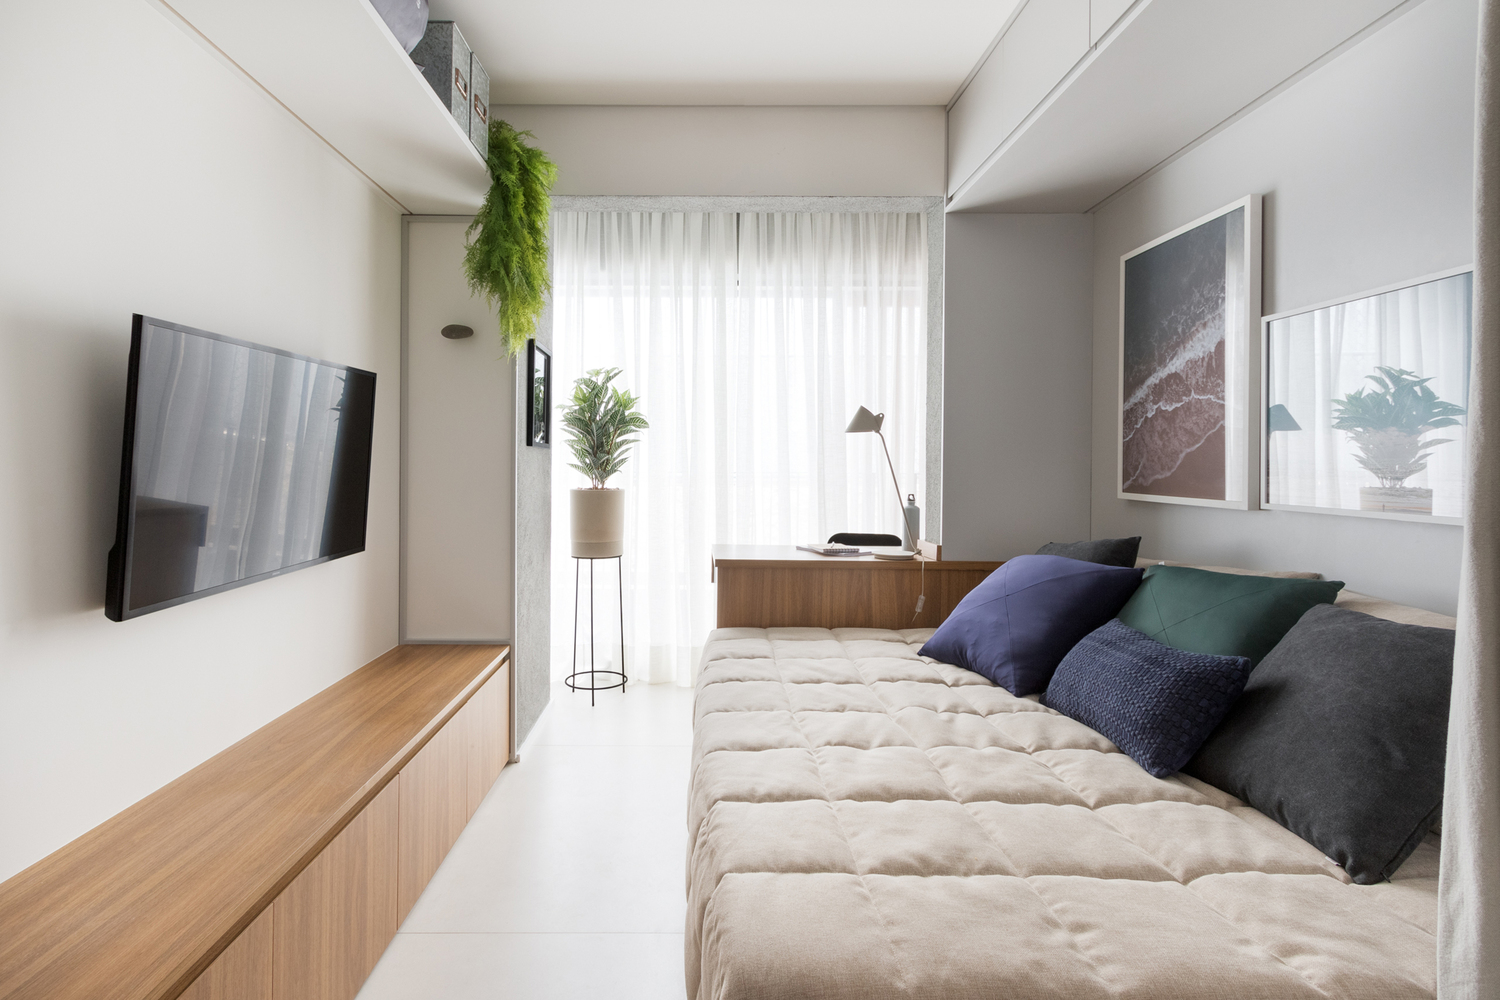 Sofa được tích hợp với chức năng giường ngủ. Ngoài ra căn hộ còn tận dụng không gian sát tường để làm kho lưu trữ.